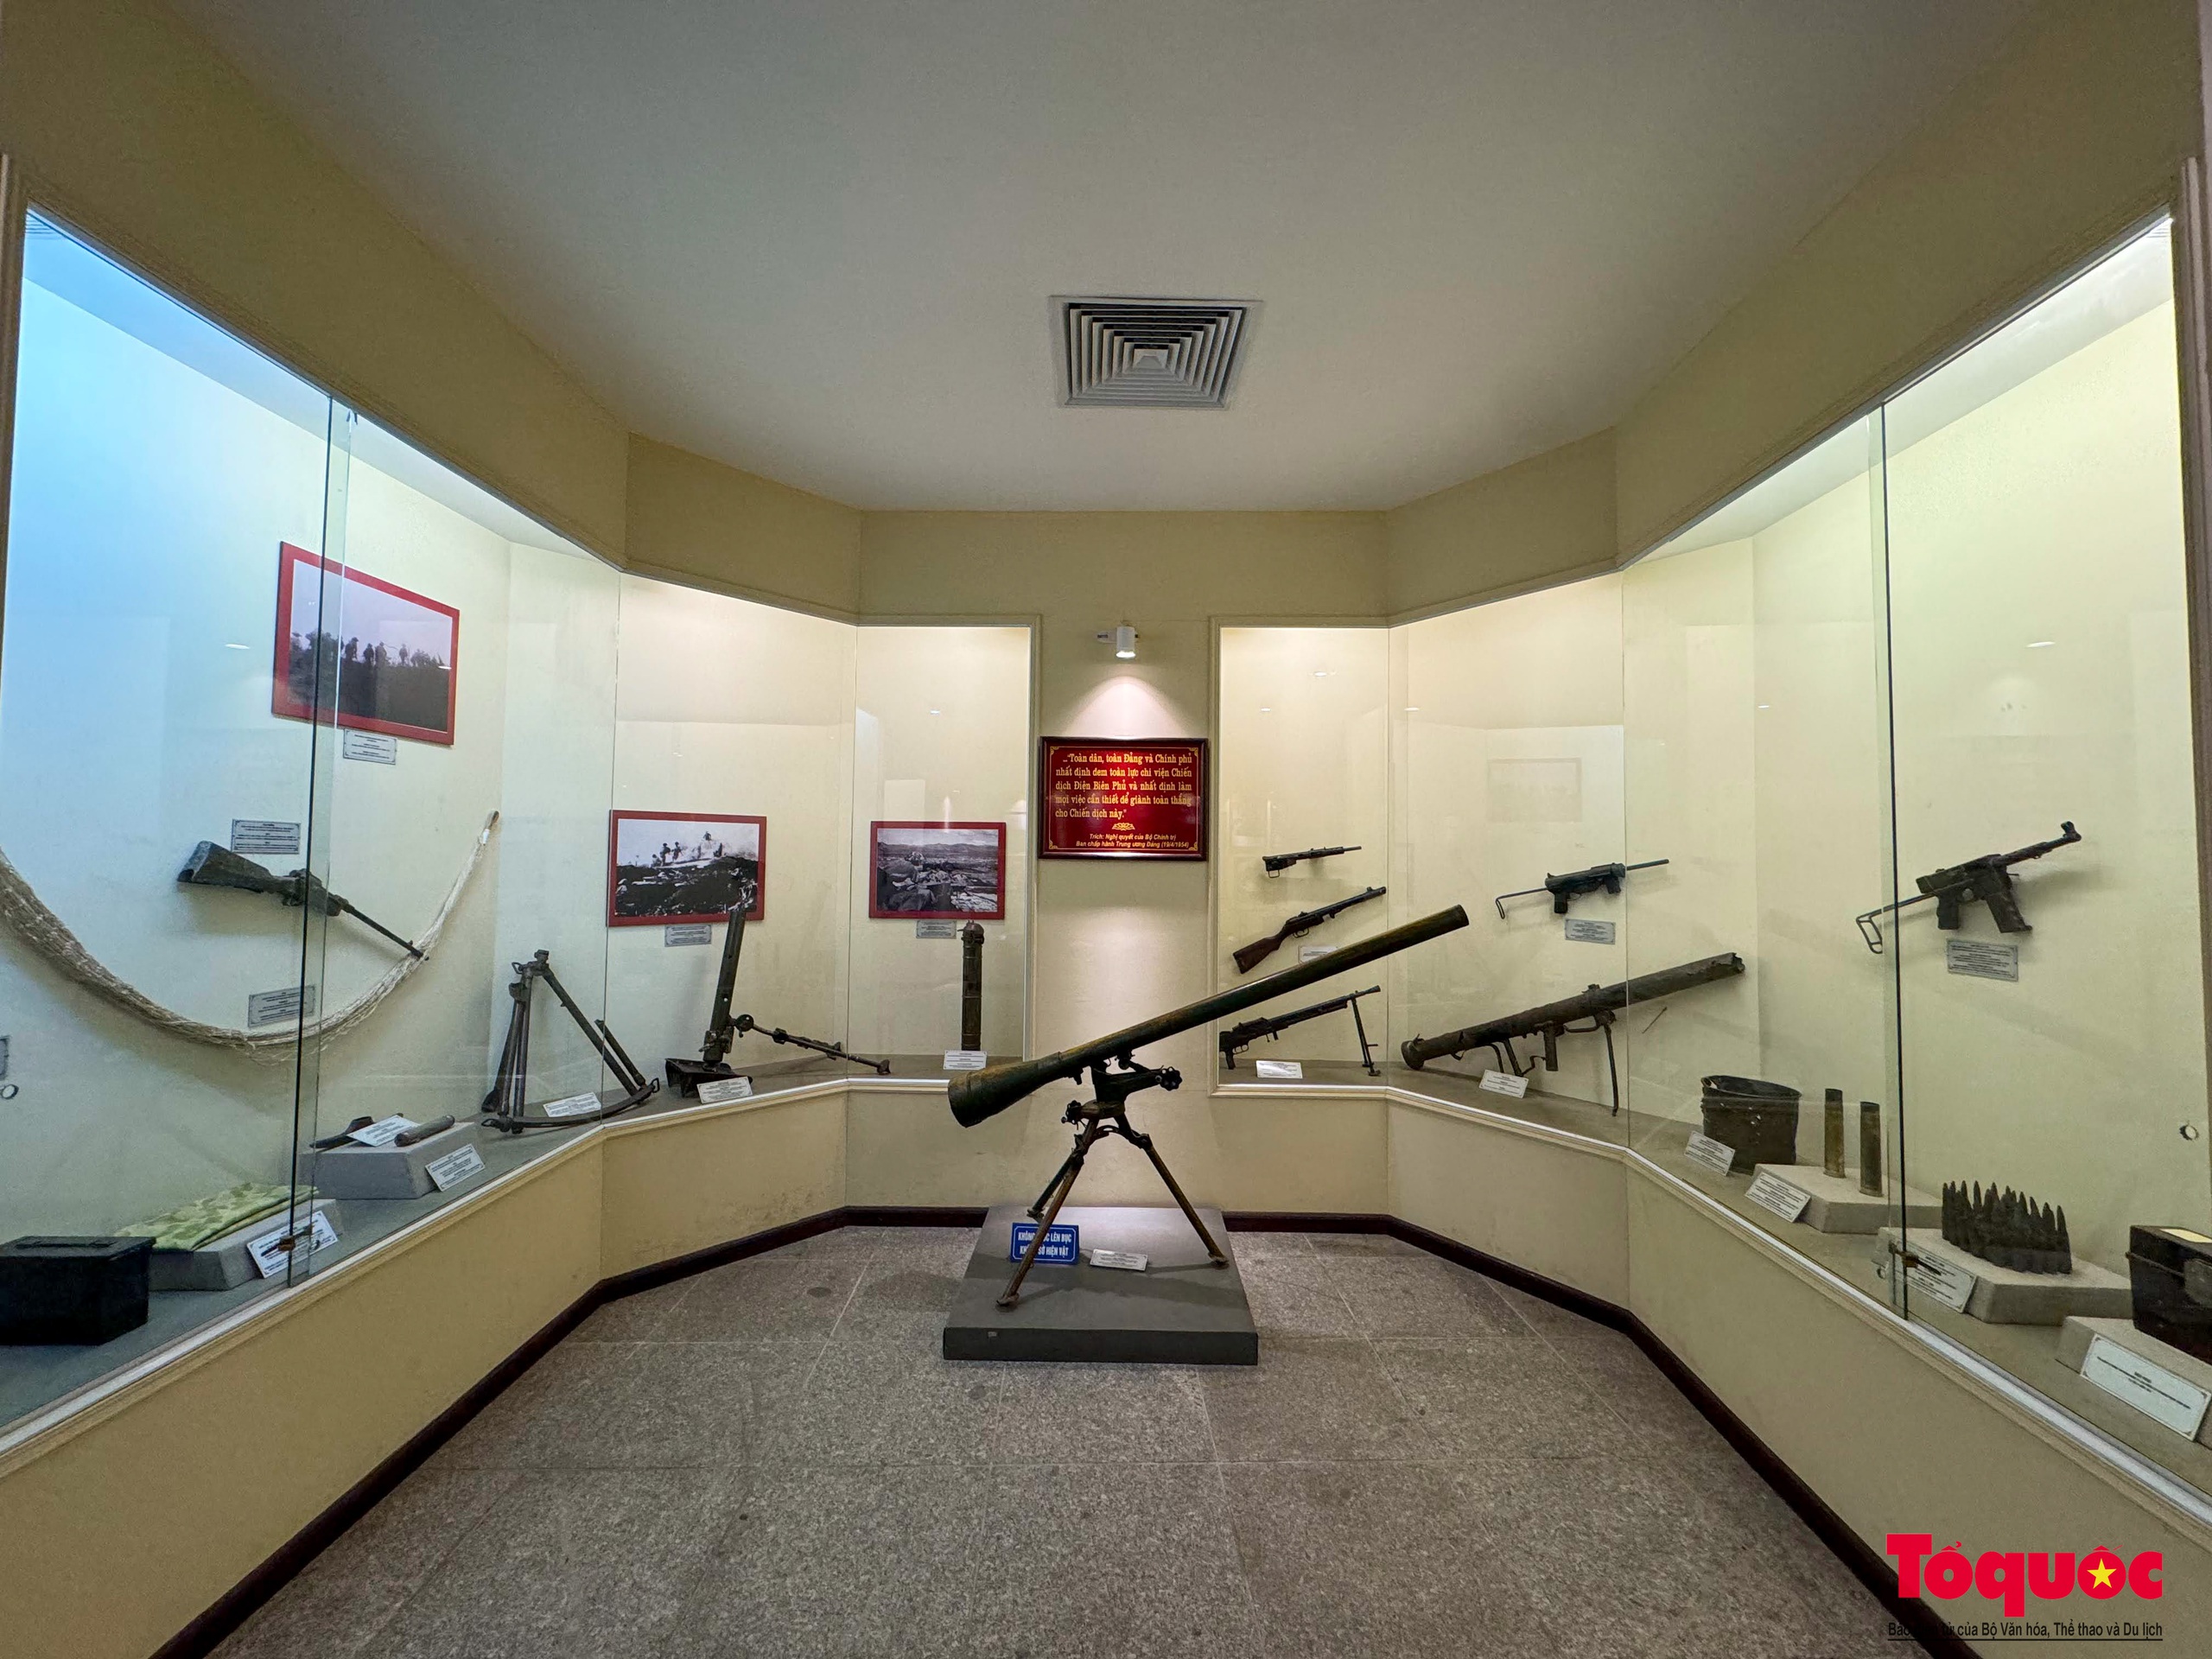 Bảo tàng Chiến thắng lịch sử Điện Biên Phủ - điểm đến ý nghĩa trong những ngày tháng 5 - Ảnh 15.